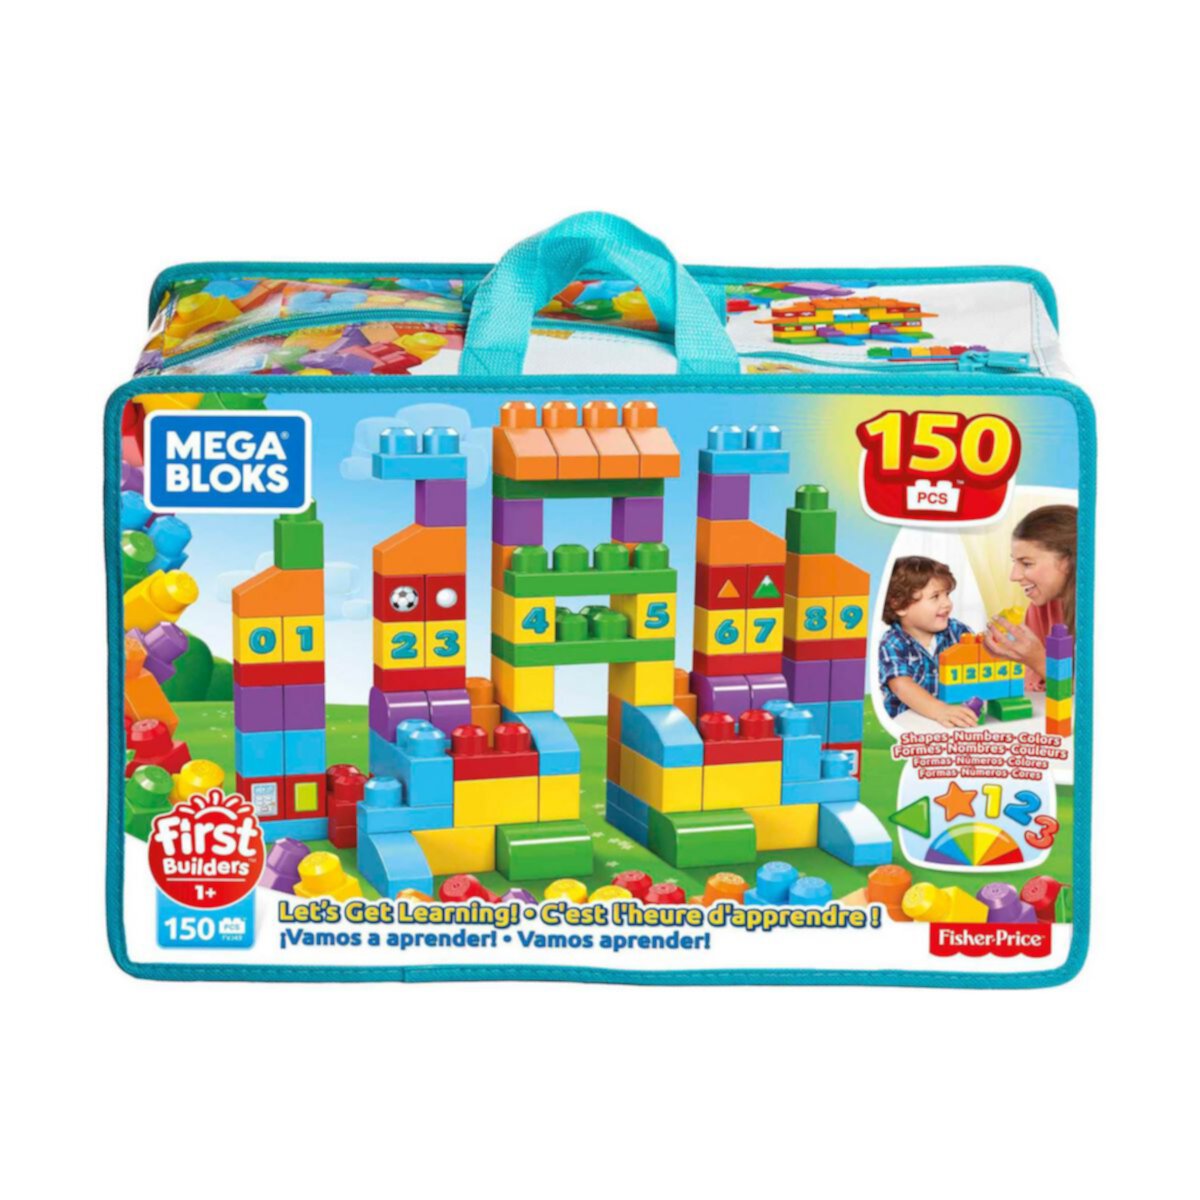 Mega Bloks Первые строители Давайте учиться! с большими строительными блоками, строительные игрушки для малышей (150 шт.) Mega Bloks